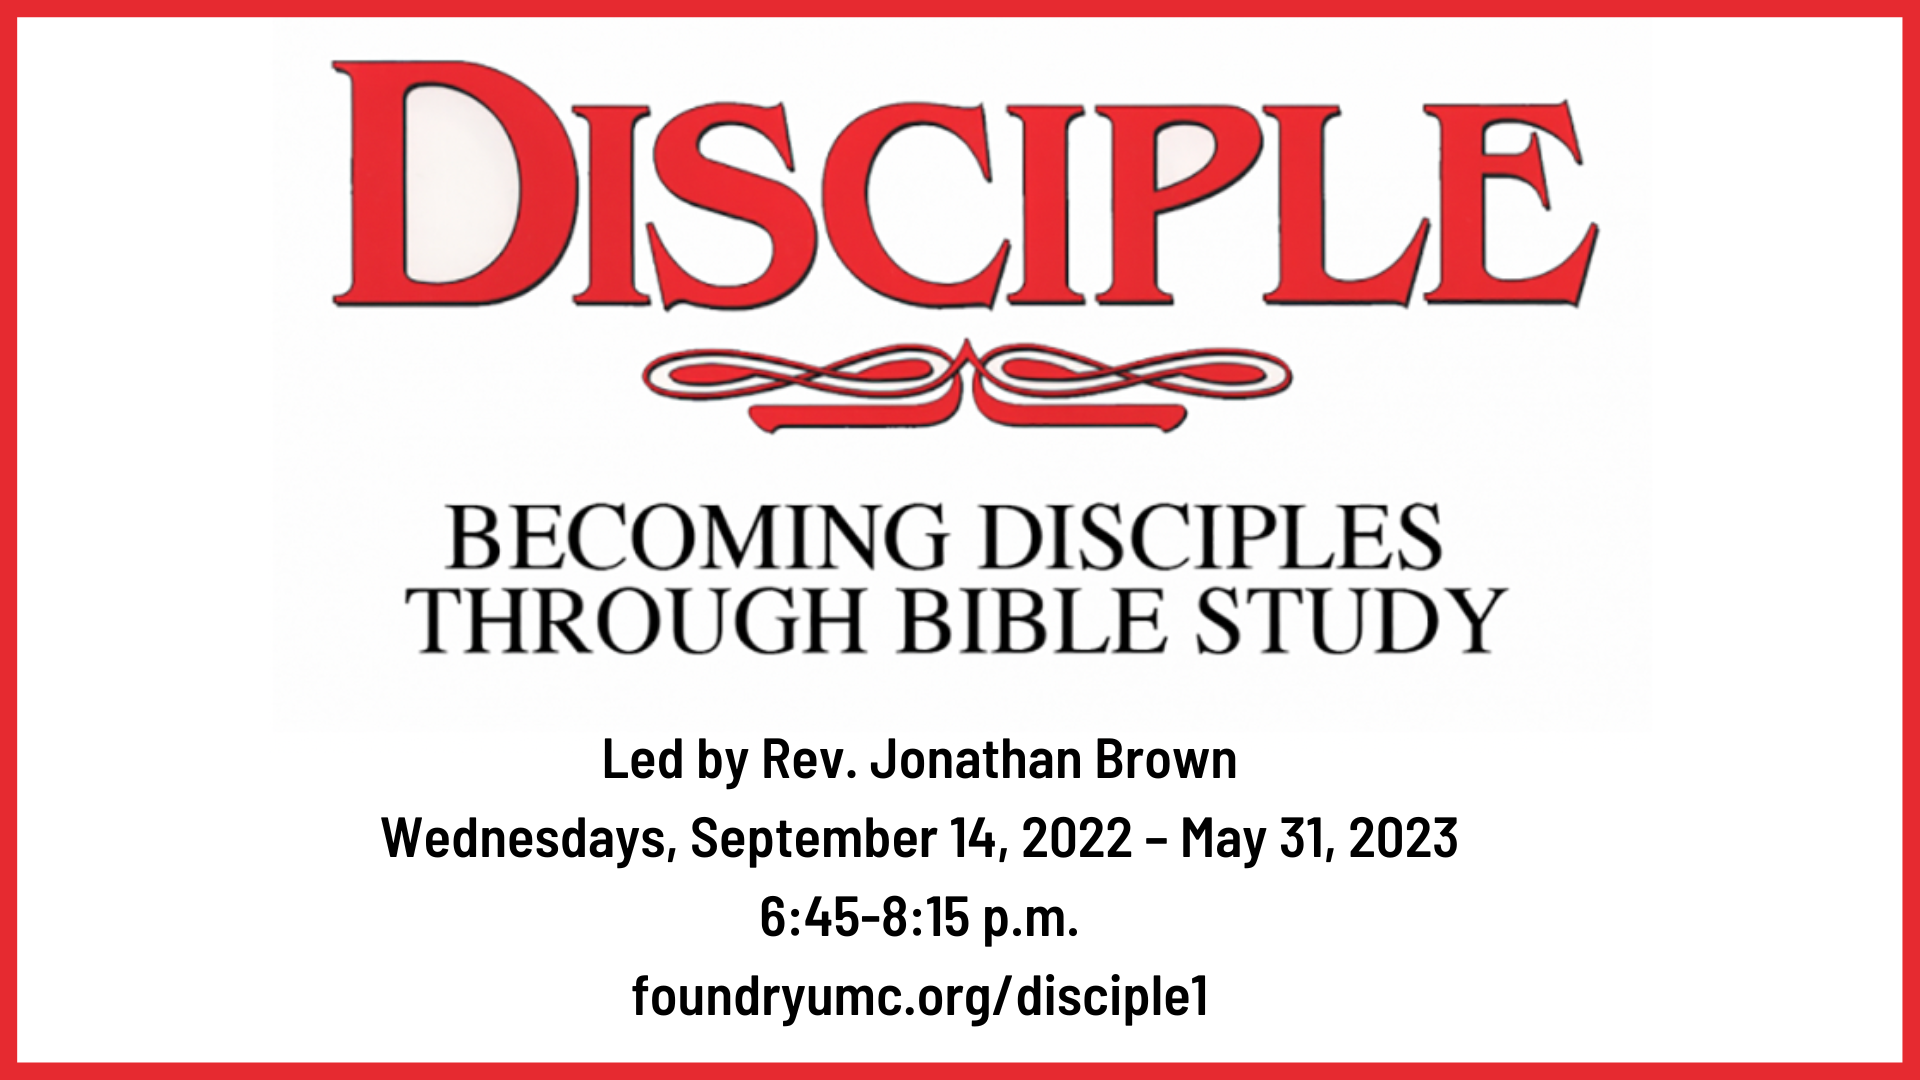 Disciple I: Becoming Disciples Through Bible Study